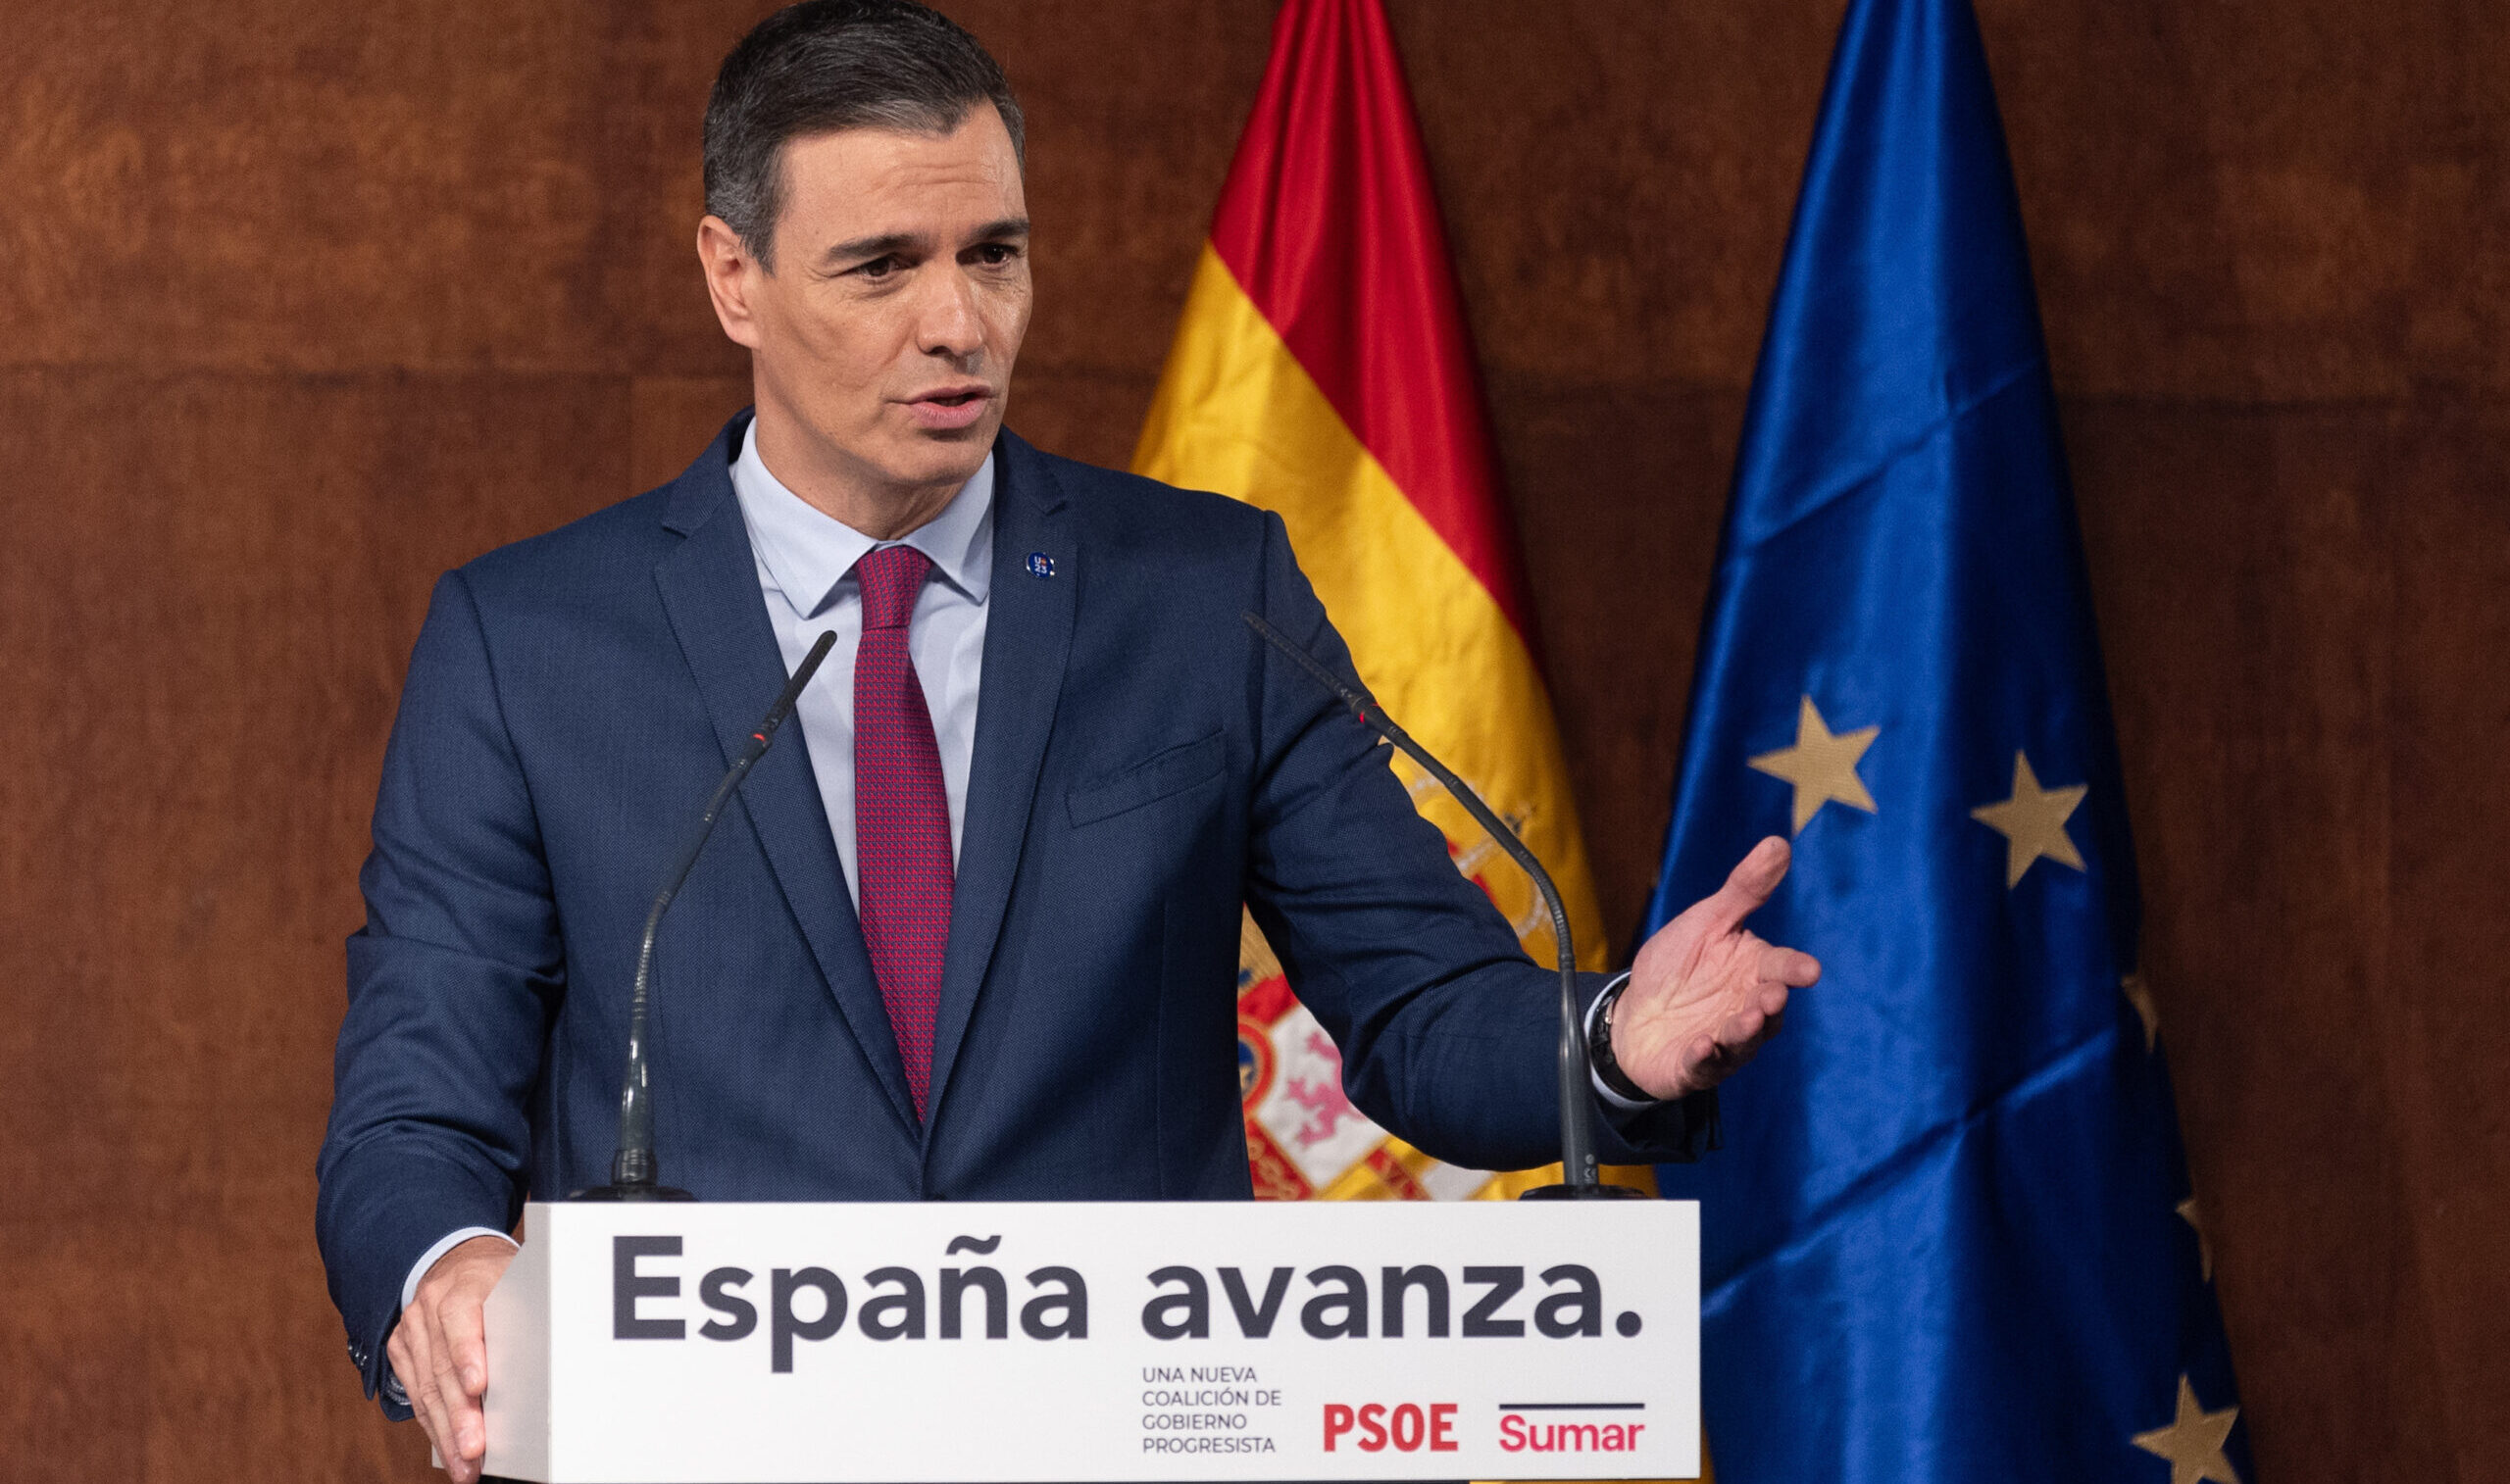 El PSOE filtra a los medios que anunció su acuerdo con Sumar como un movimiento táctico para presionar al resto de partidos